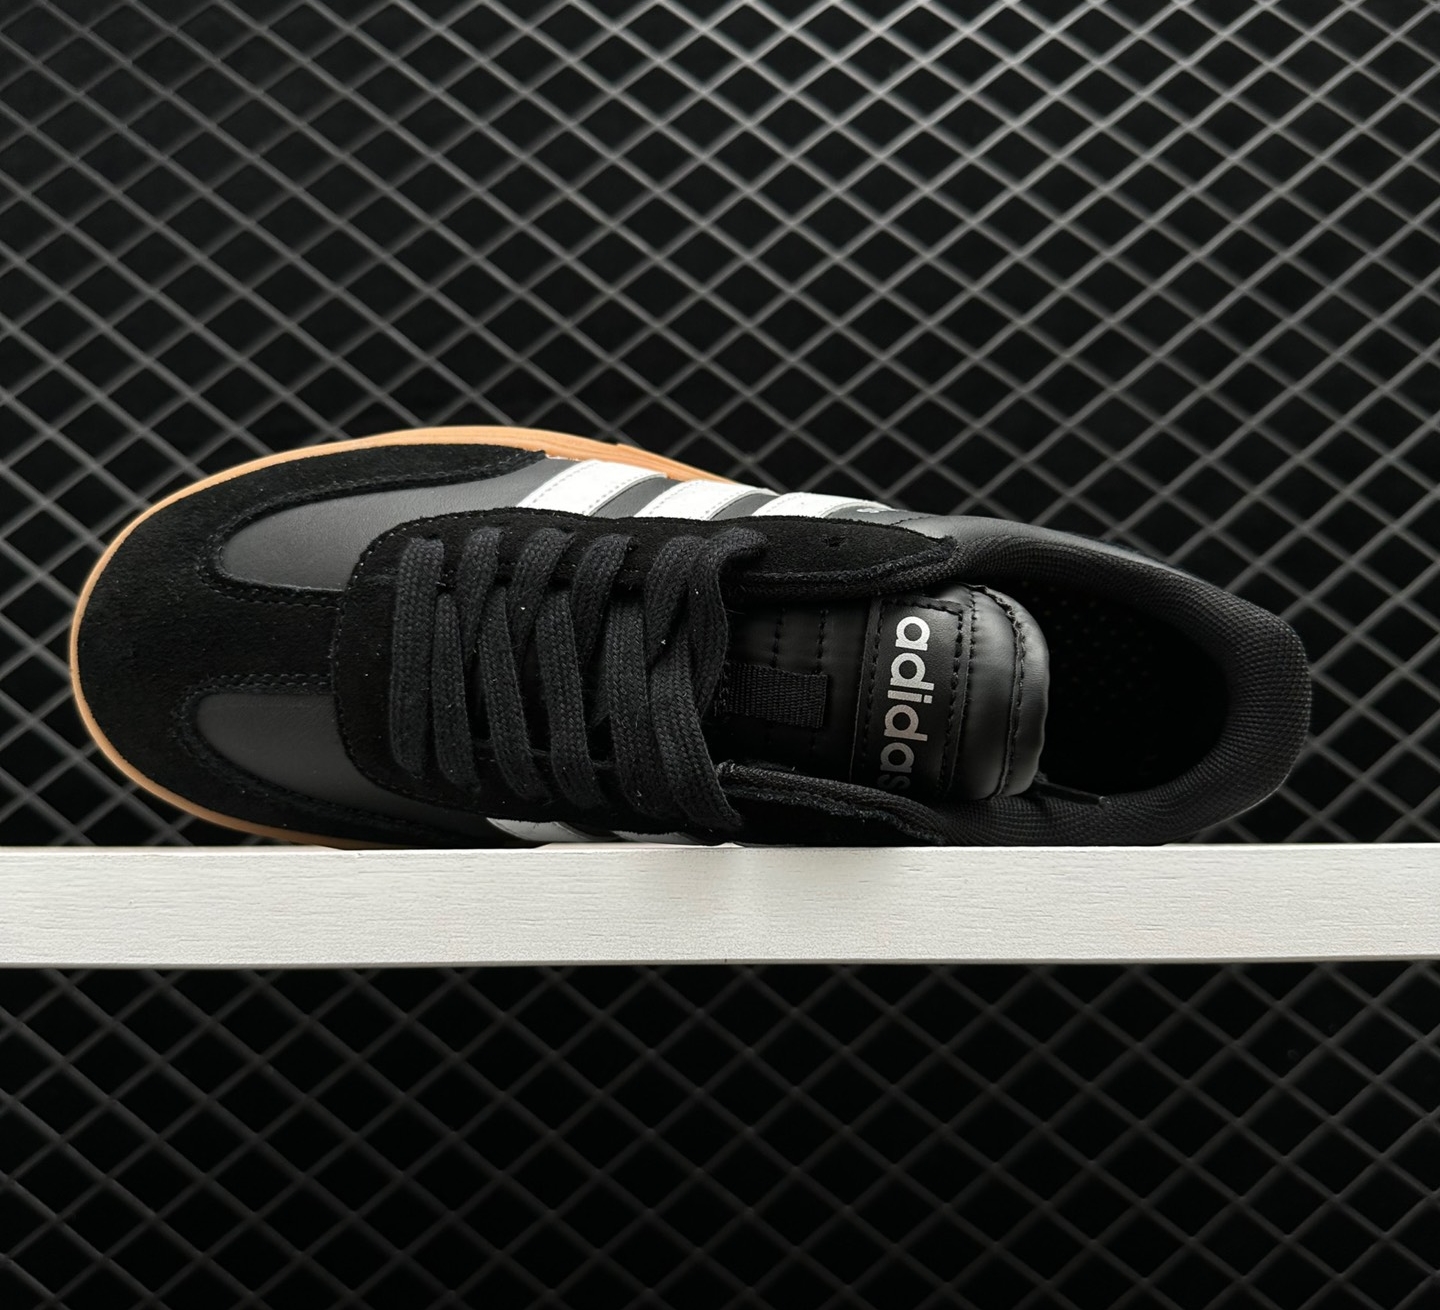 Adidas Neo Gradas 'Black White Brown' FX9305 - Stylish and Versatile Footwear